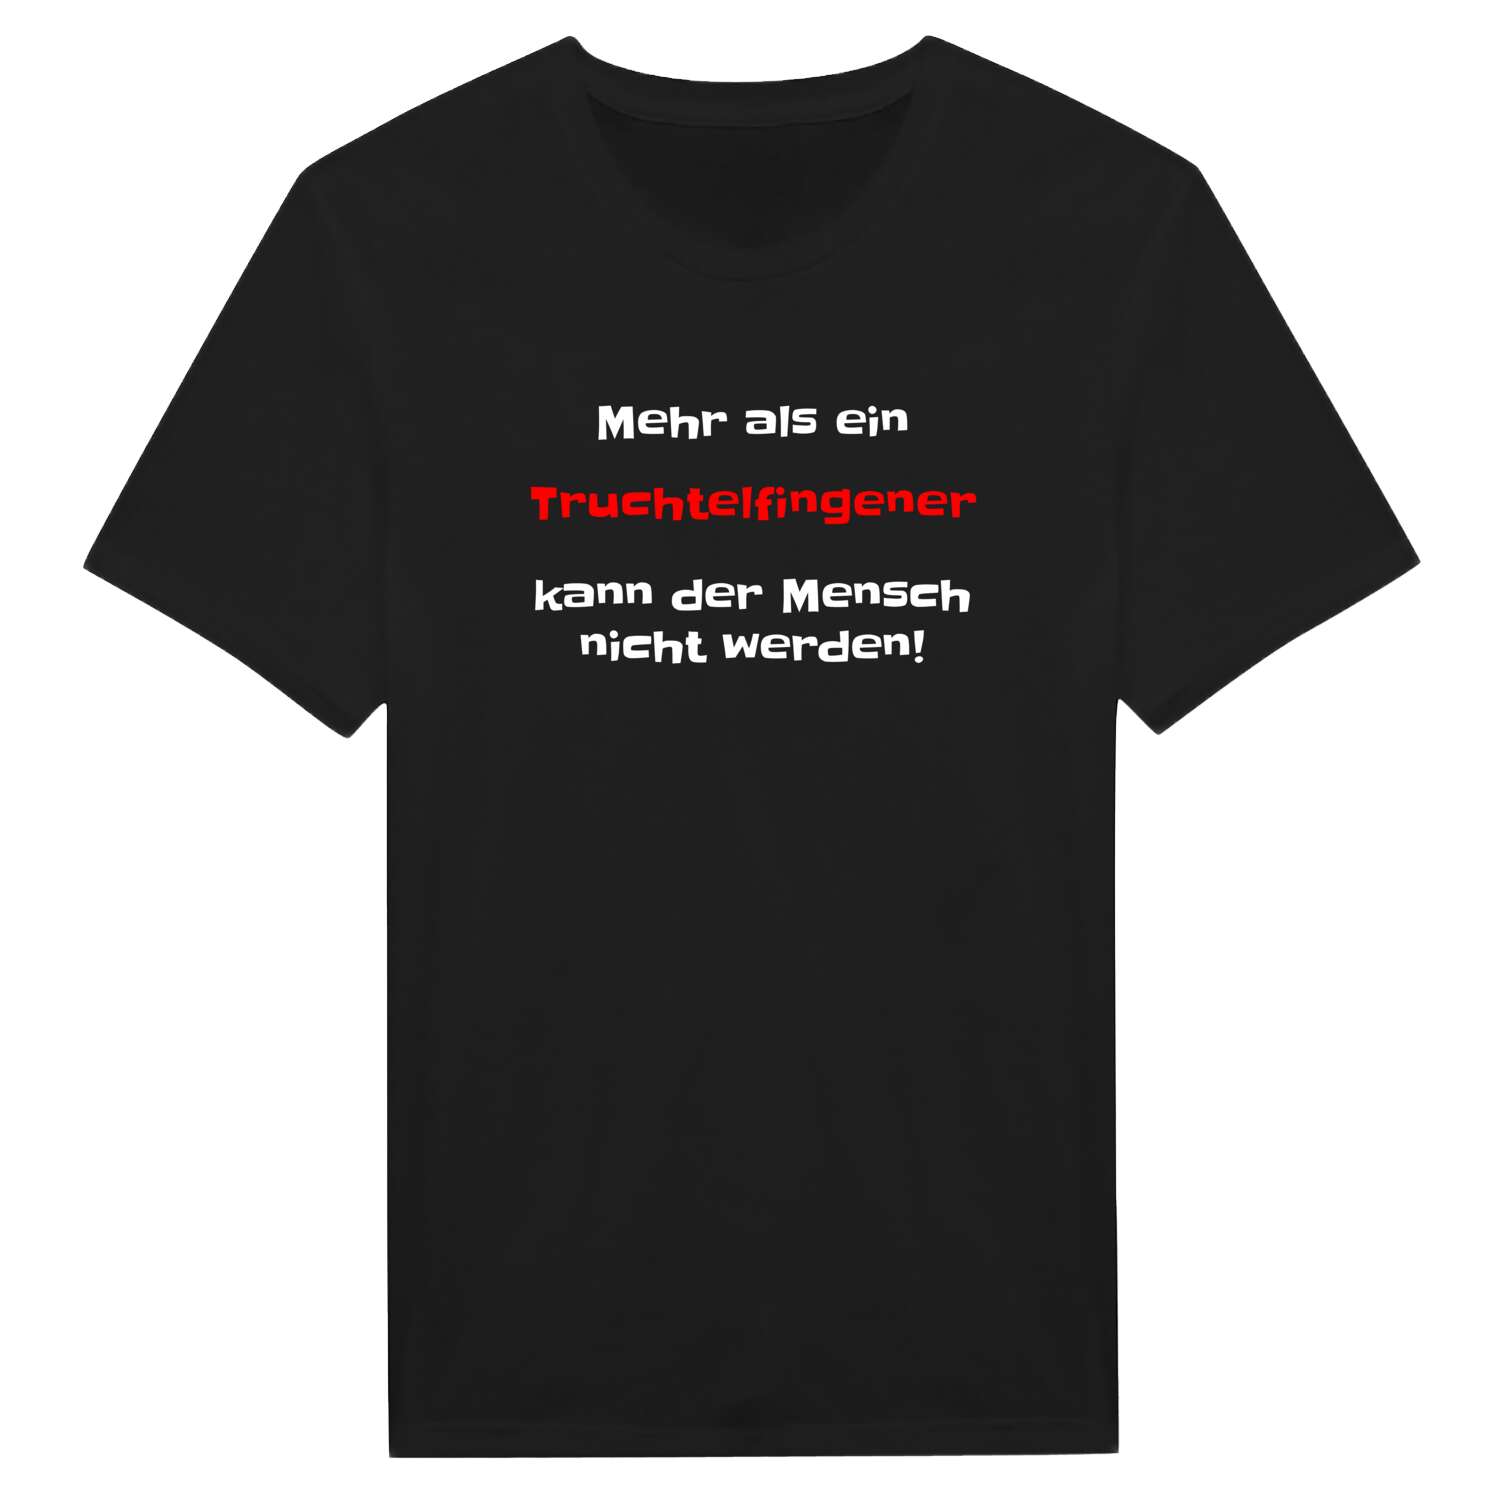 Truchtelfingen T-Shirt »Mehr als ein«